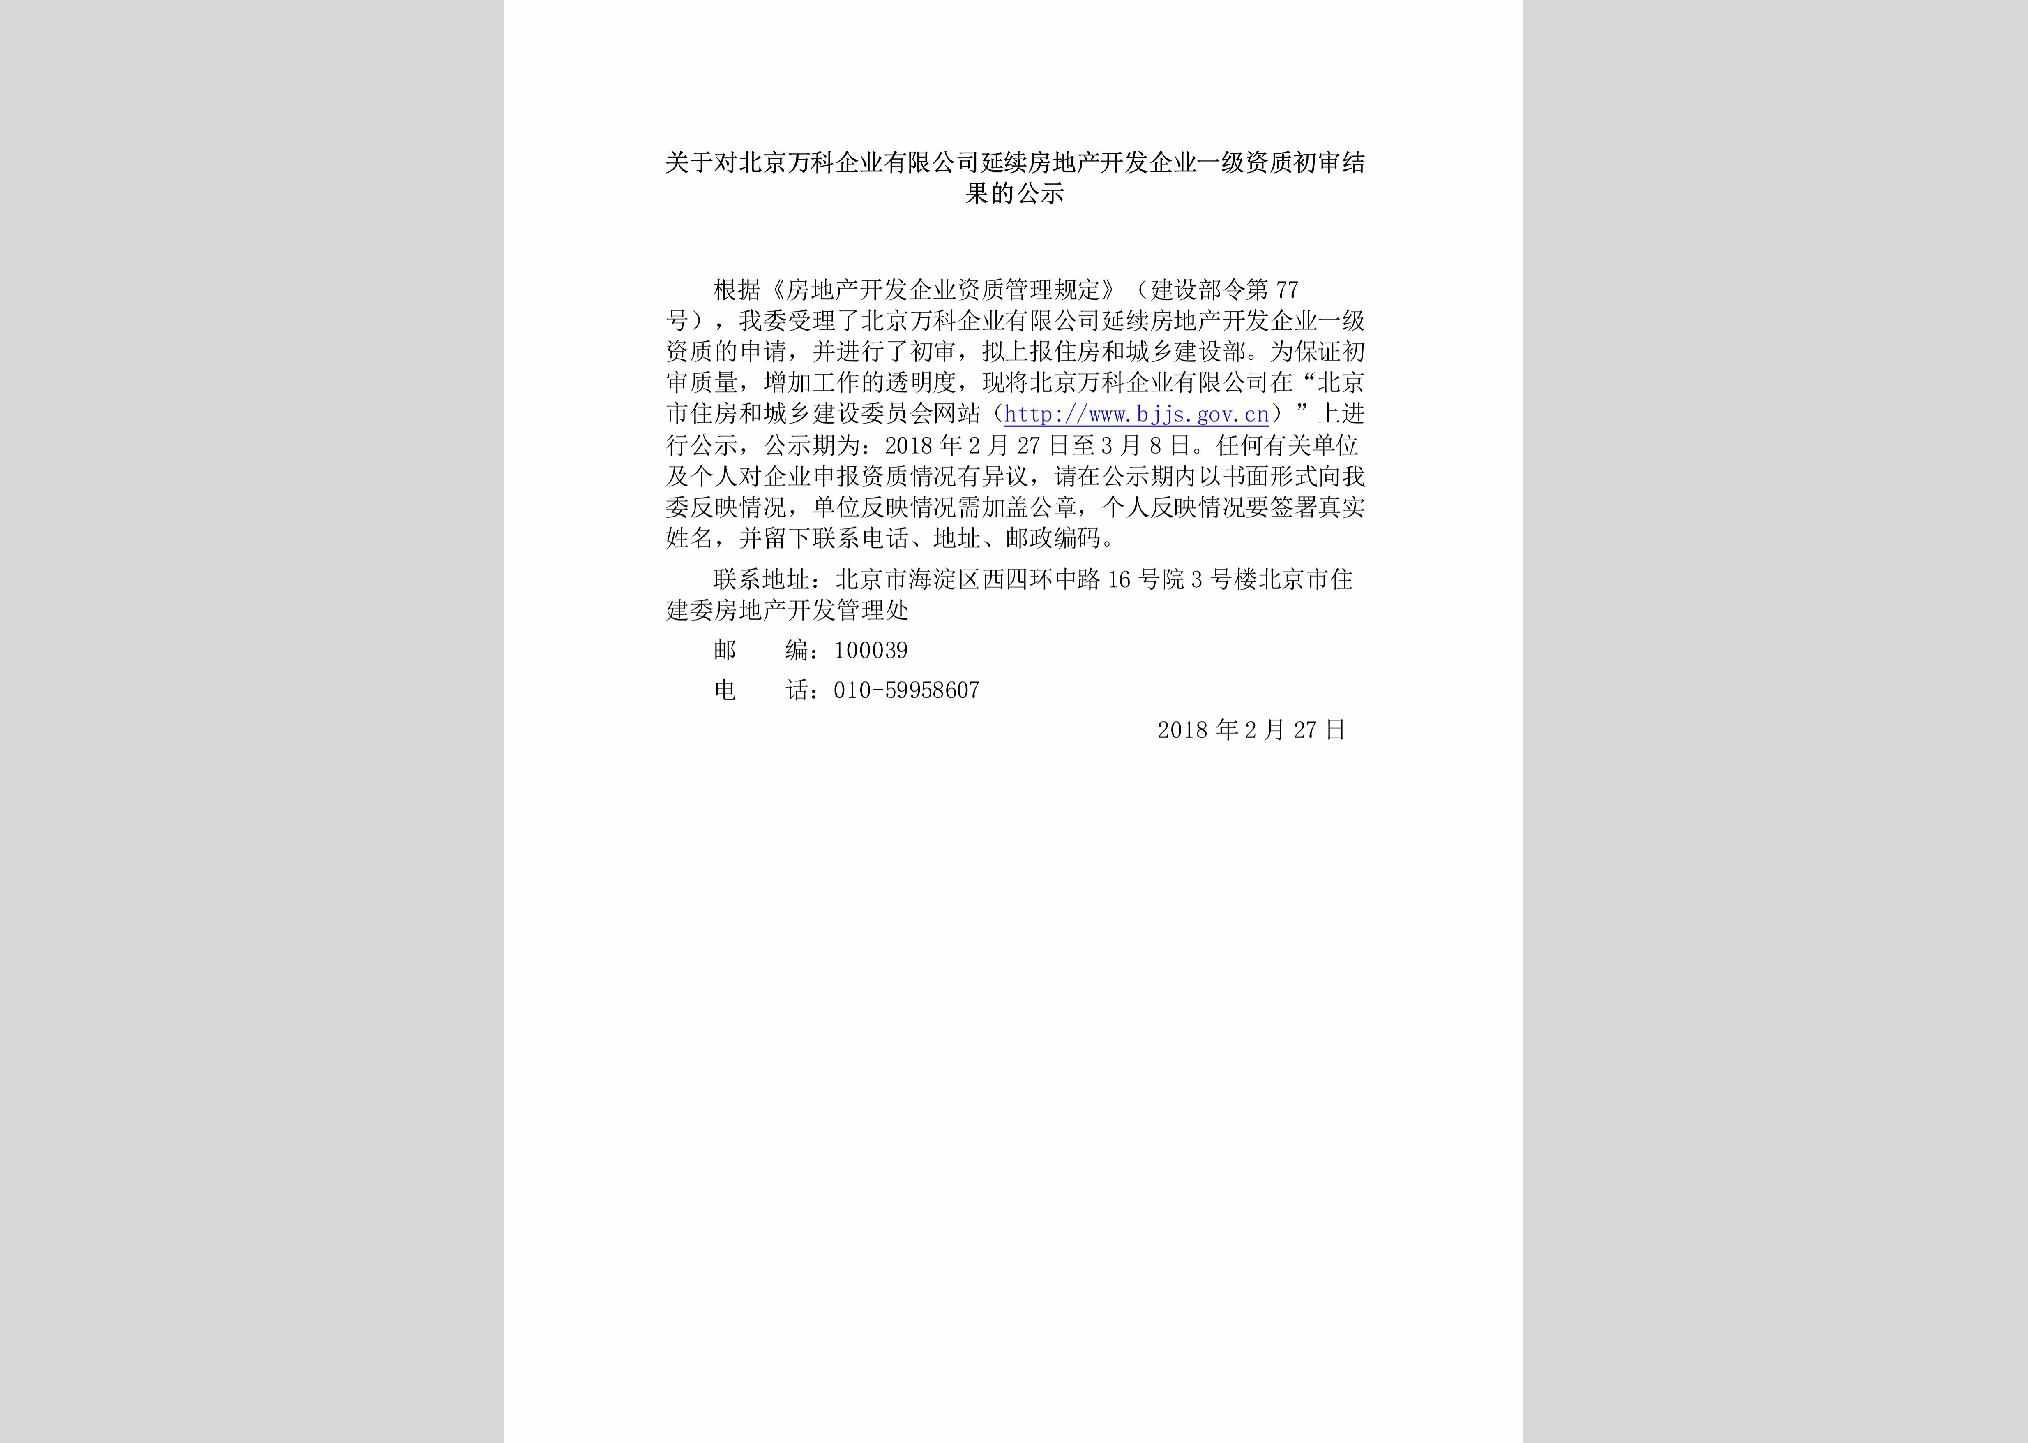 BJ-WKFCKFCS-2018：关于对北京万科企业有限公司延续房地产开发企业一级资质初审结果的公示